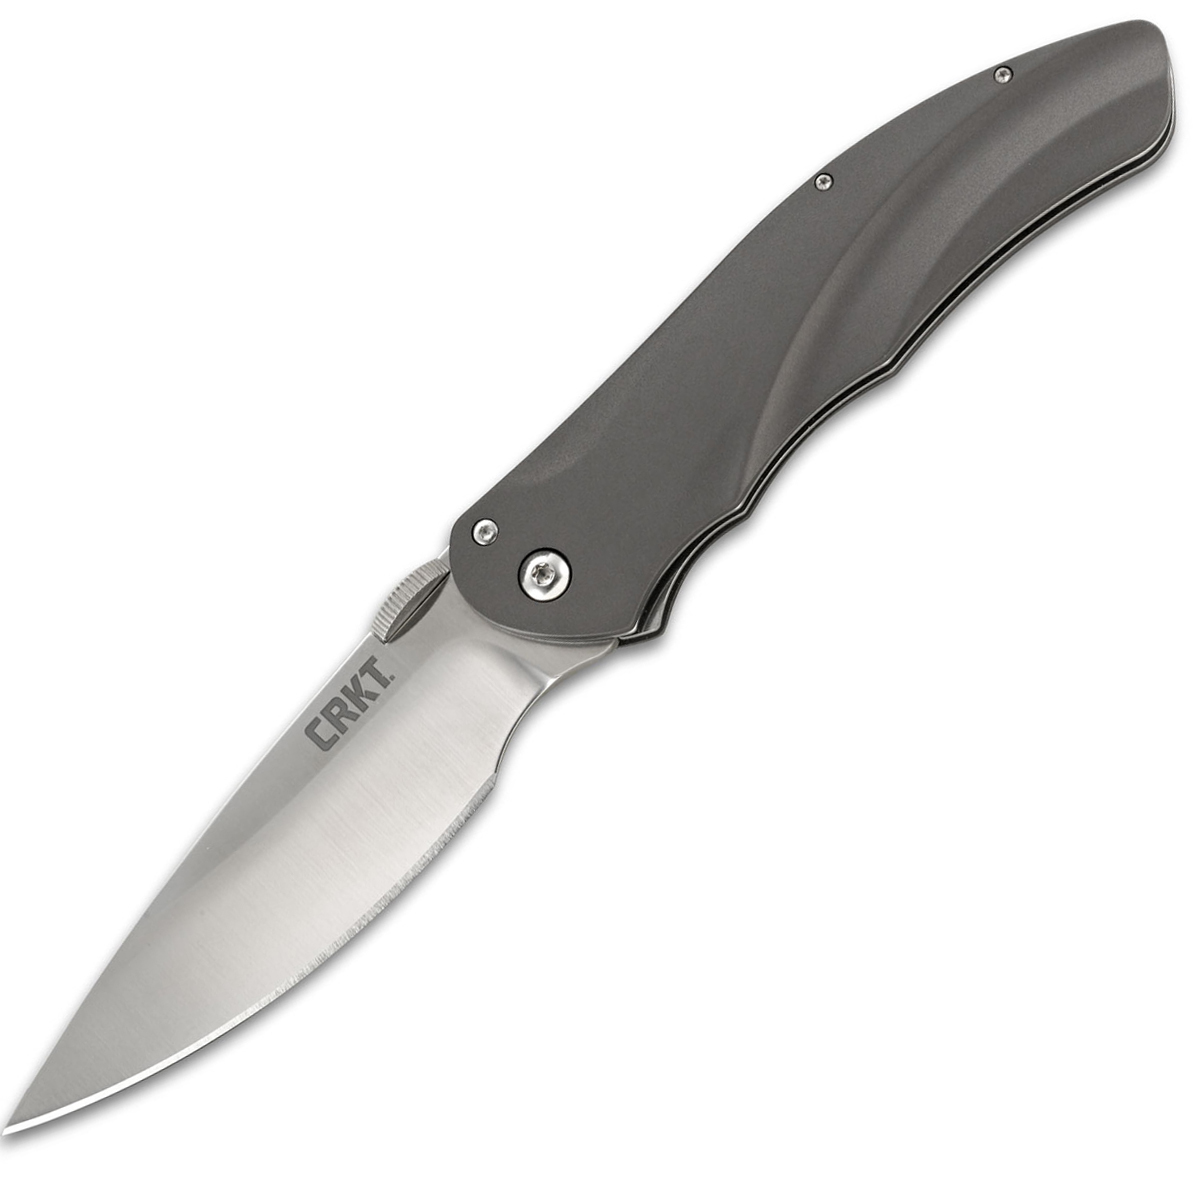 Полуавтоматический складной нож Argus, CRKT 7030, сталь AUS-8 Satin Finish, рукоять алюминий, цвет Silver нож складной полуавтоматический